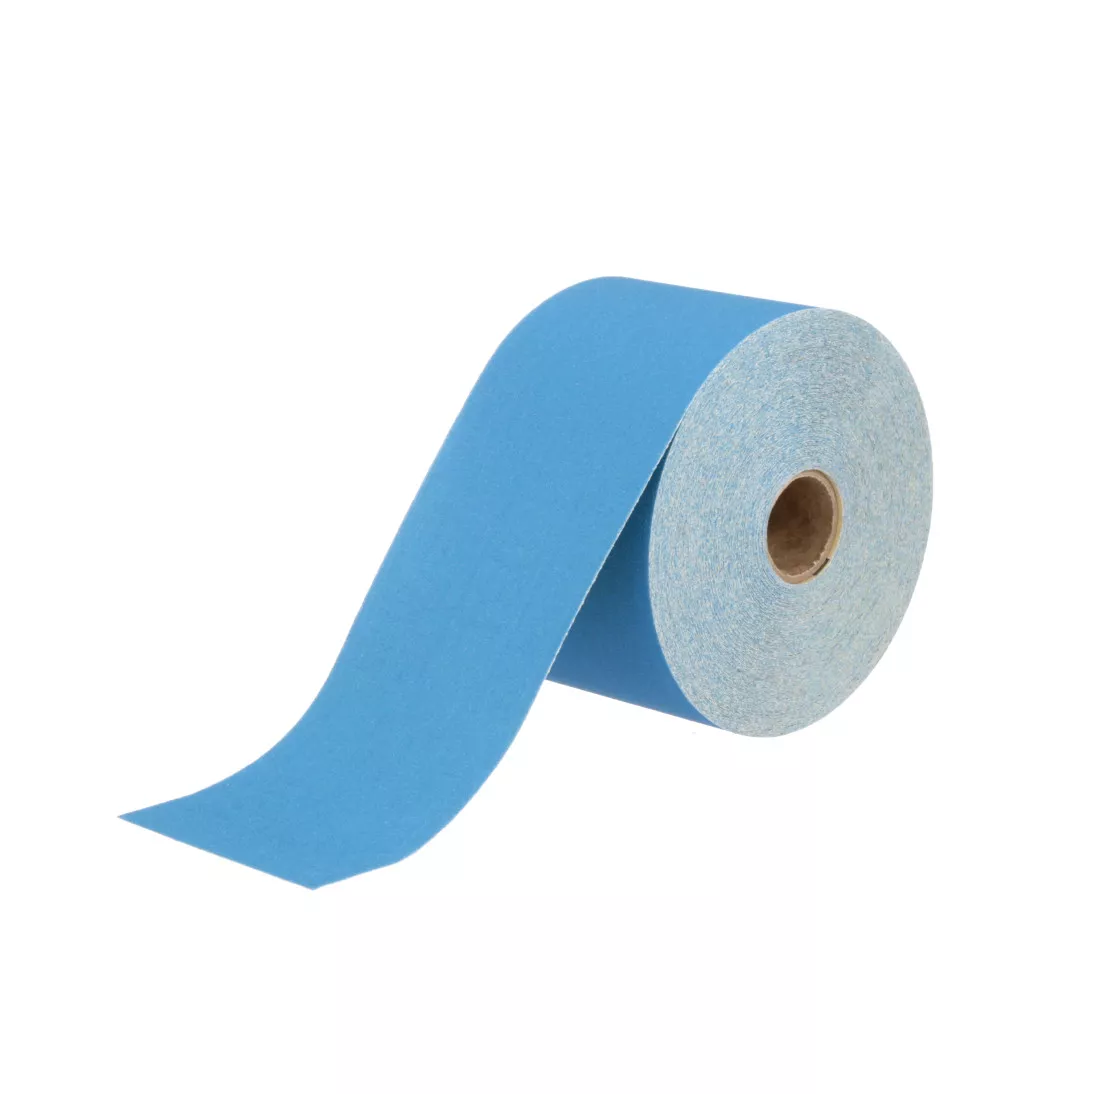 3M™ Stikit™ Blue Abrasive Sheet Roll, 36221, 180, 2-3/4 in x 30 yd, 5
rolls per case